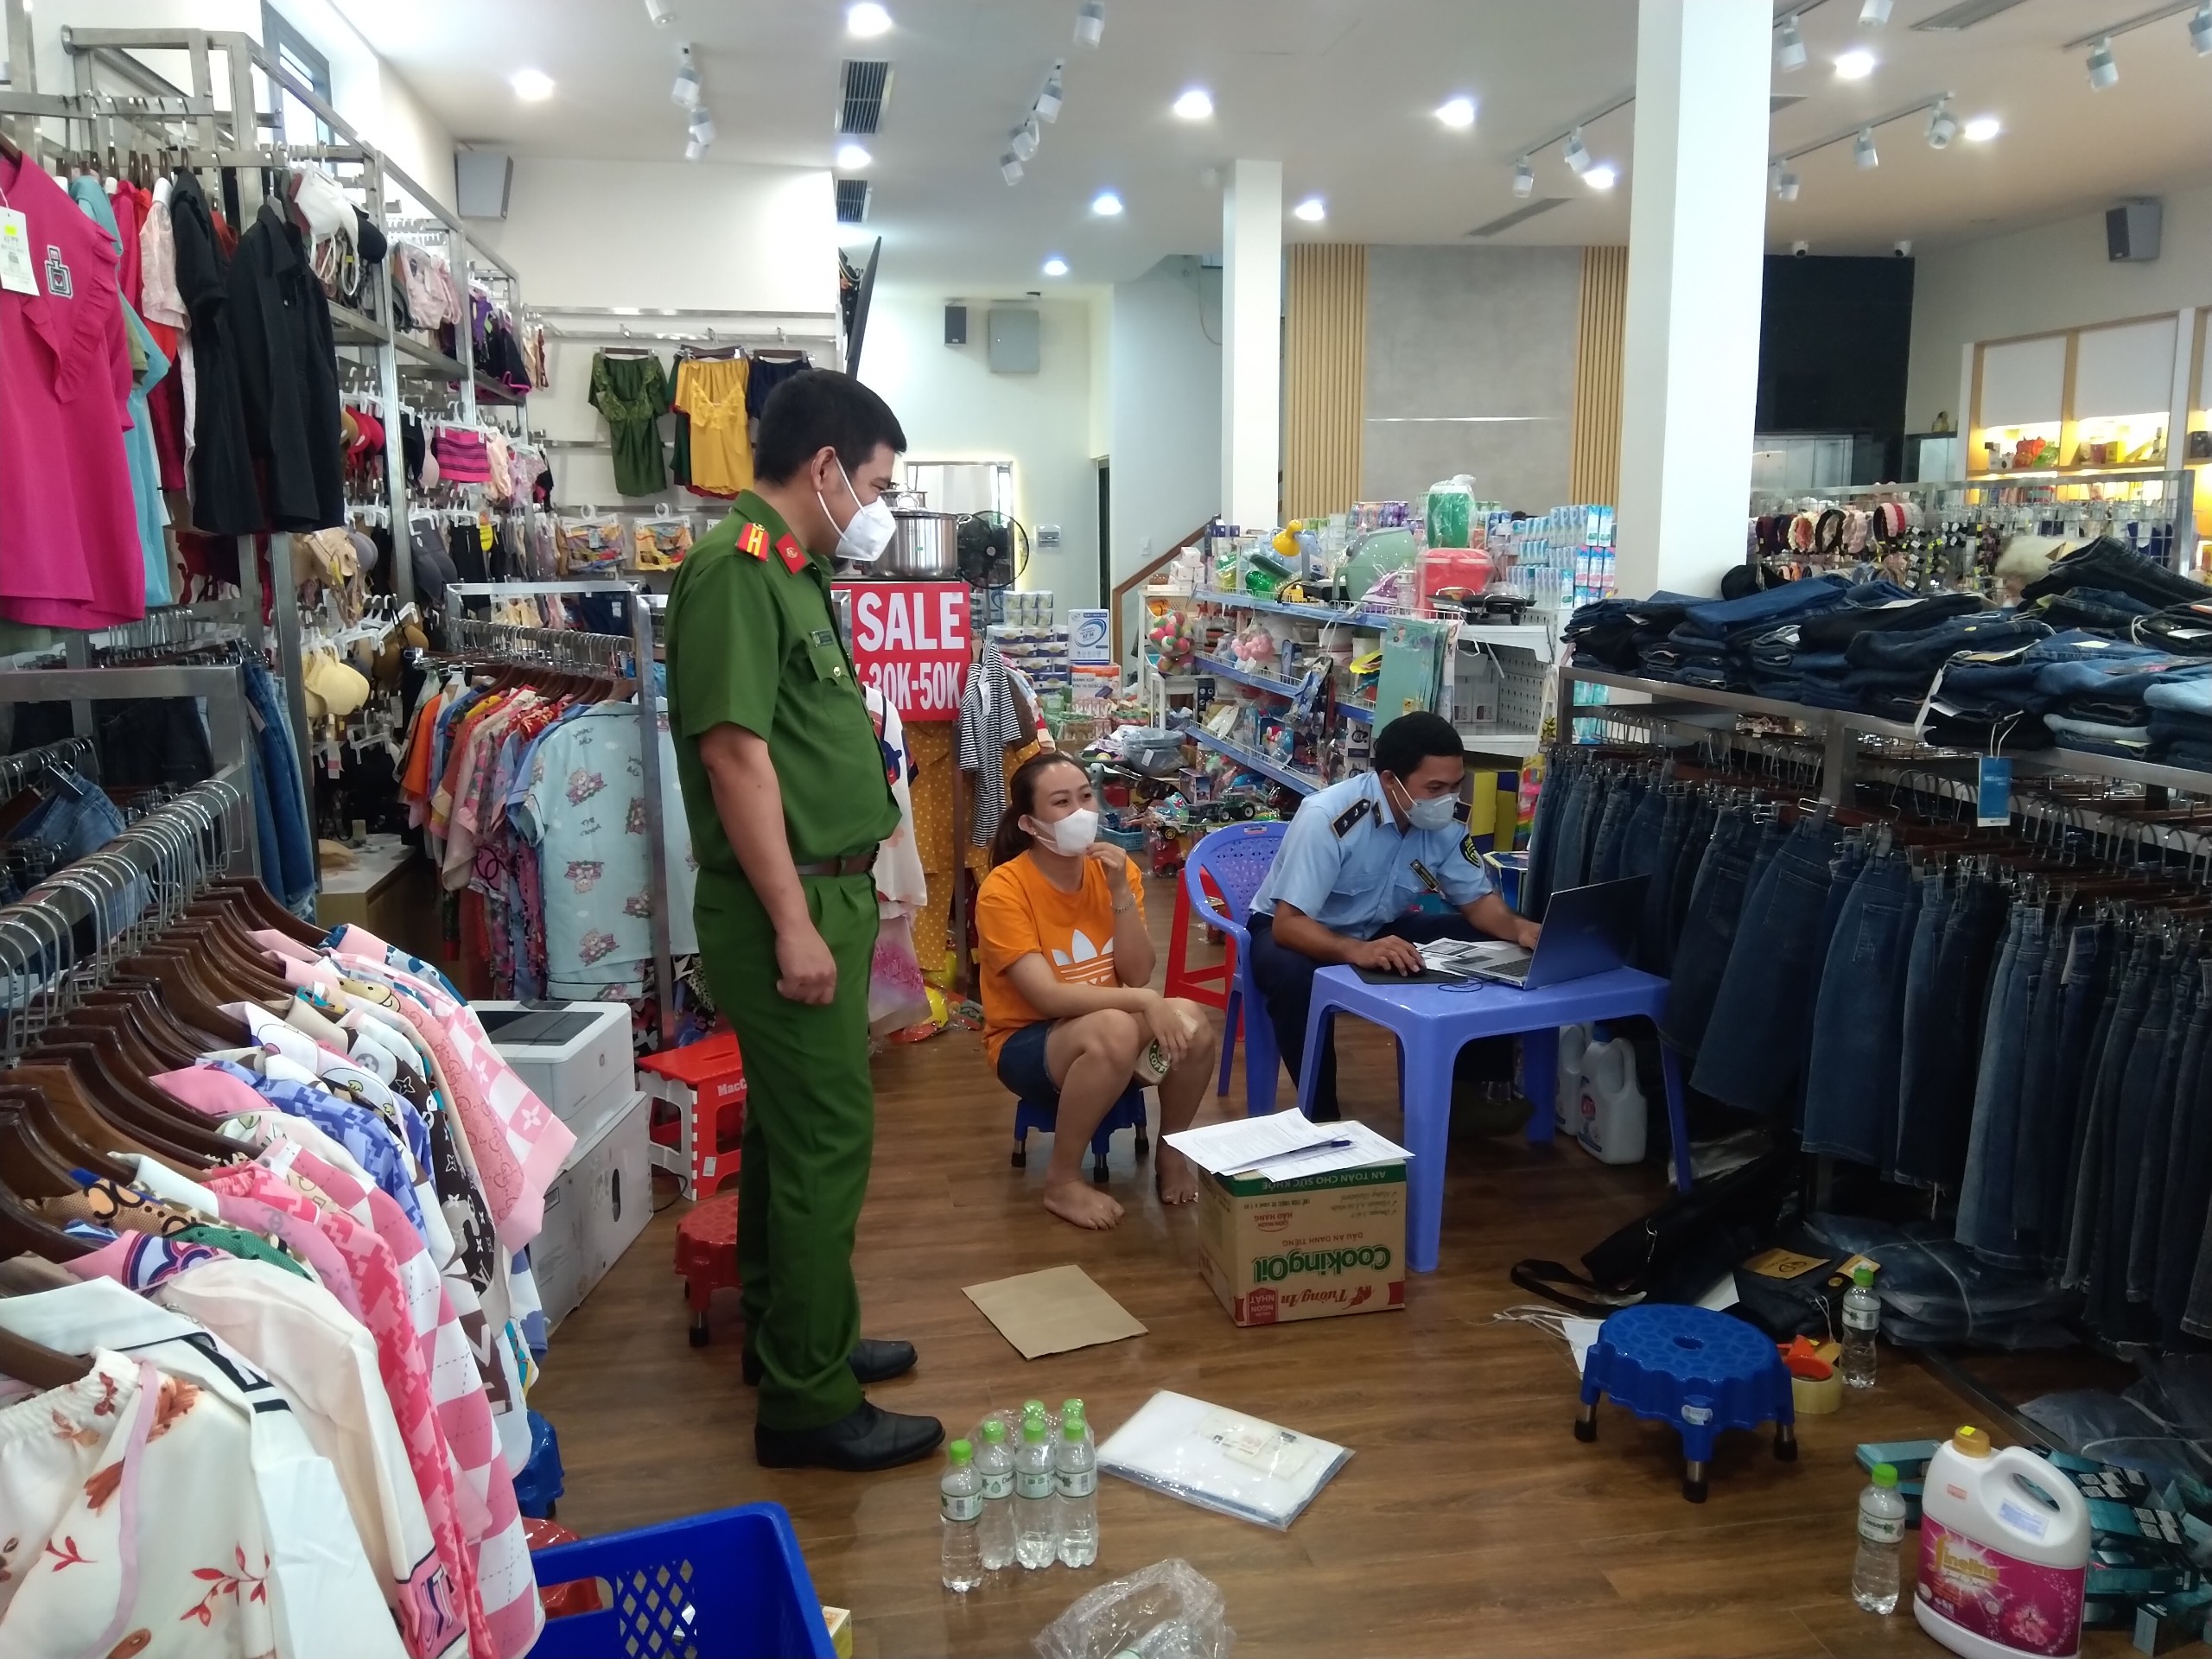 Tây Ninh: Lợi dụng môi trường điện tử, cơ sở kinh doanh hàng lậu và giả mạo nhãn hiệu